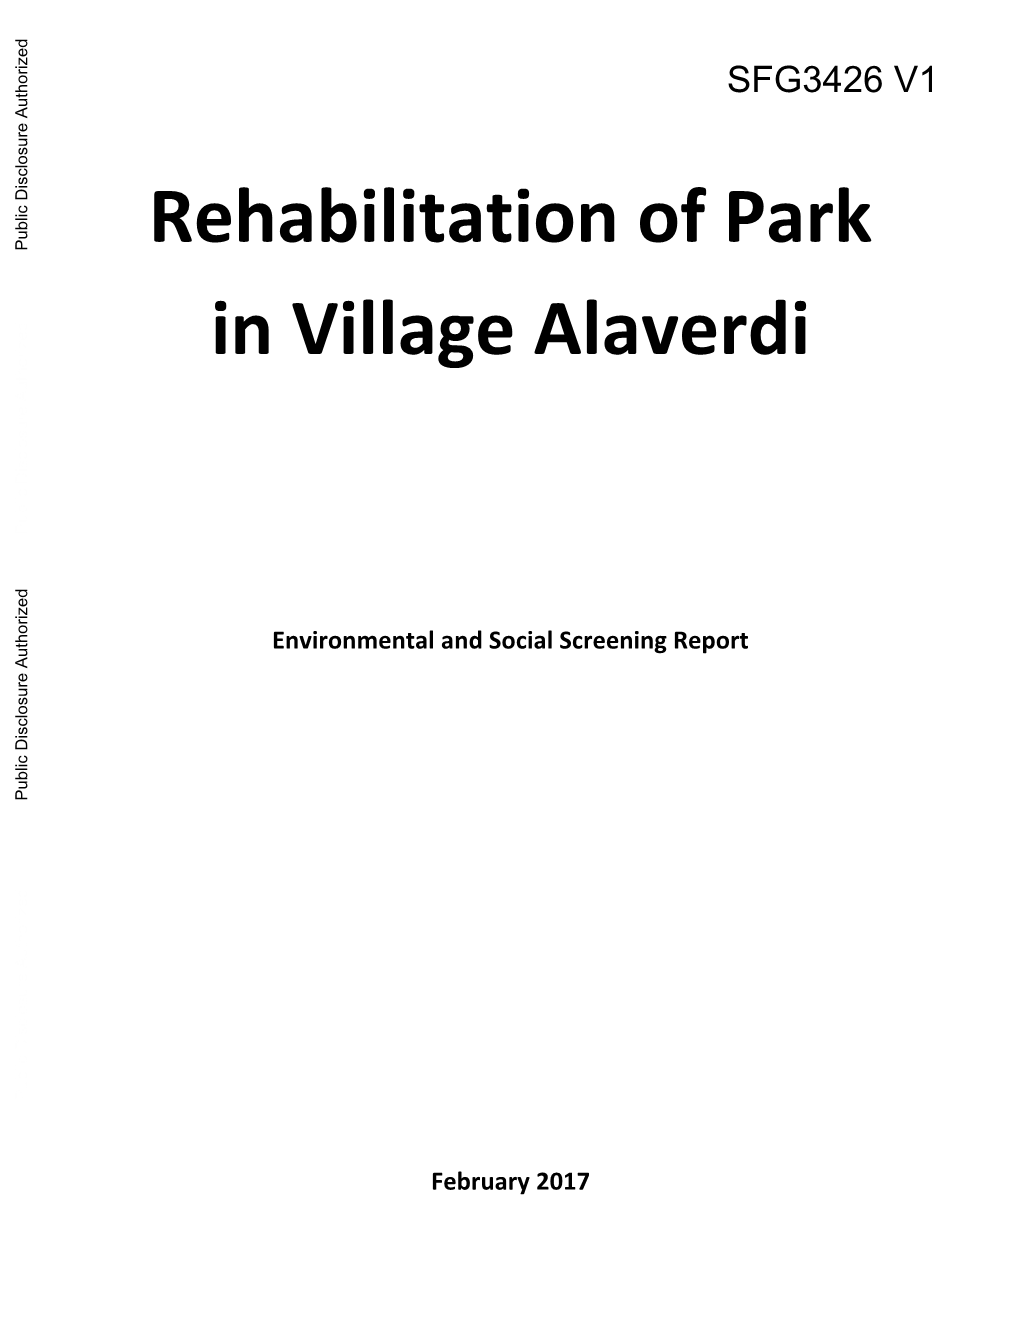 Rehabilitation of Park in Village Alaverdi